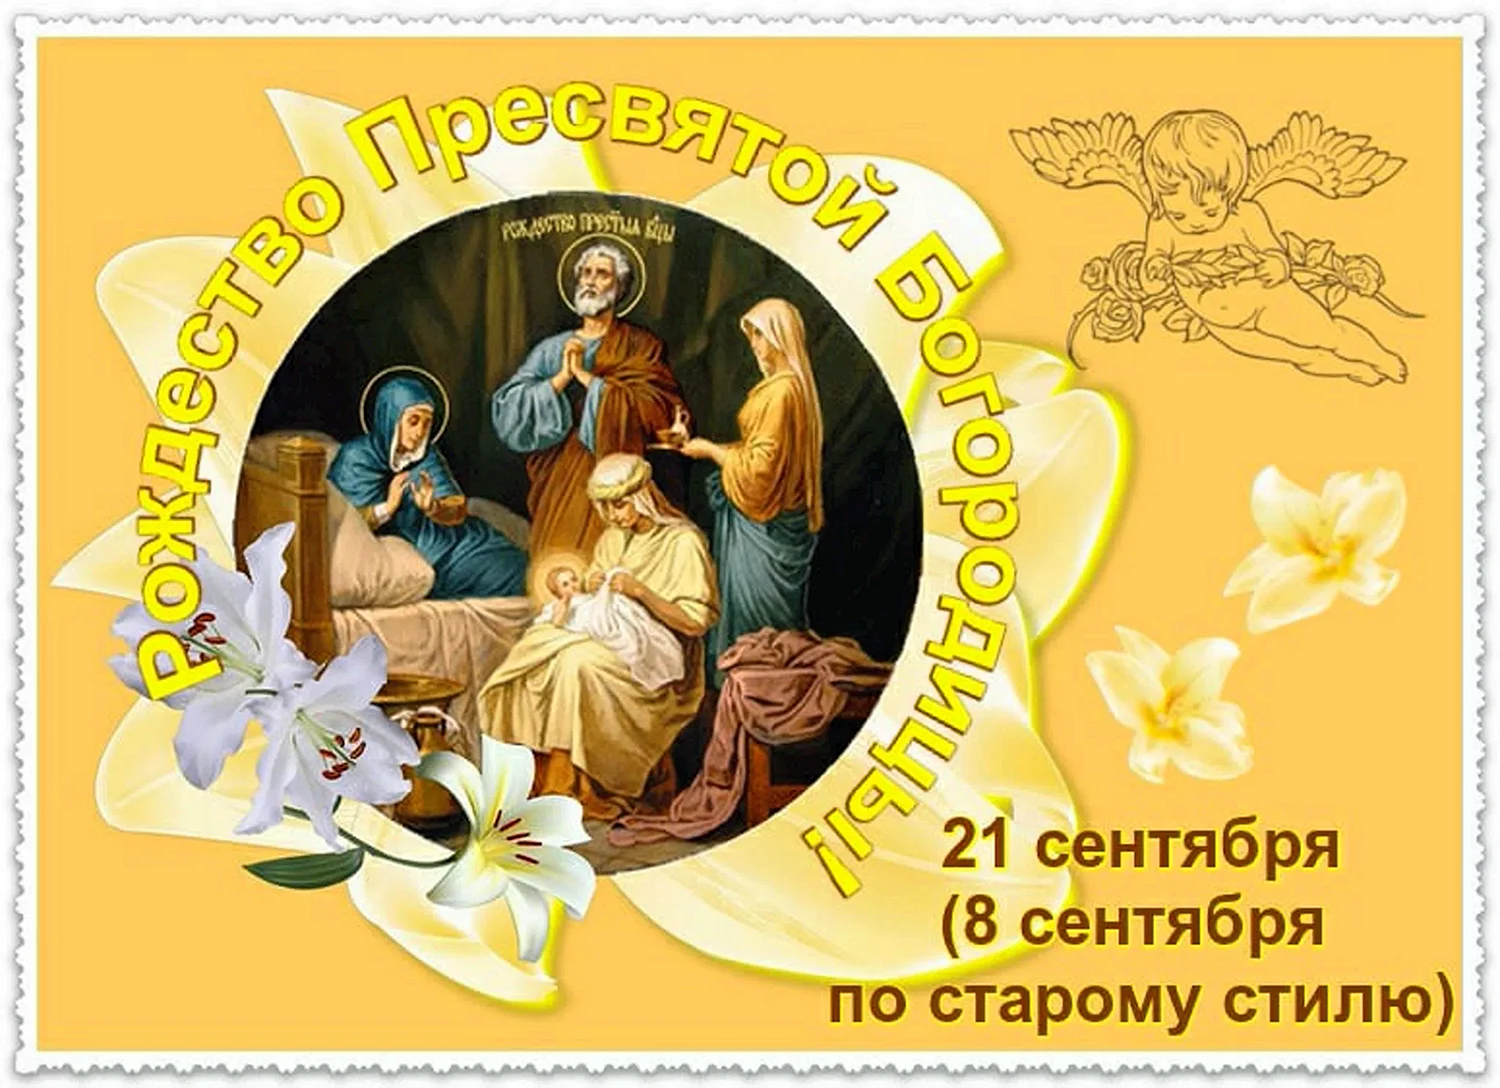 Рождество Пресвятой Богородицы открытки